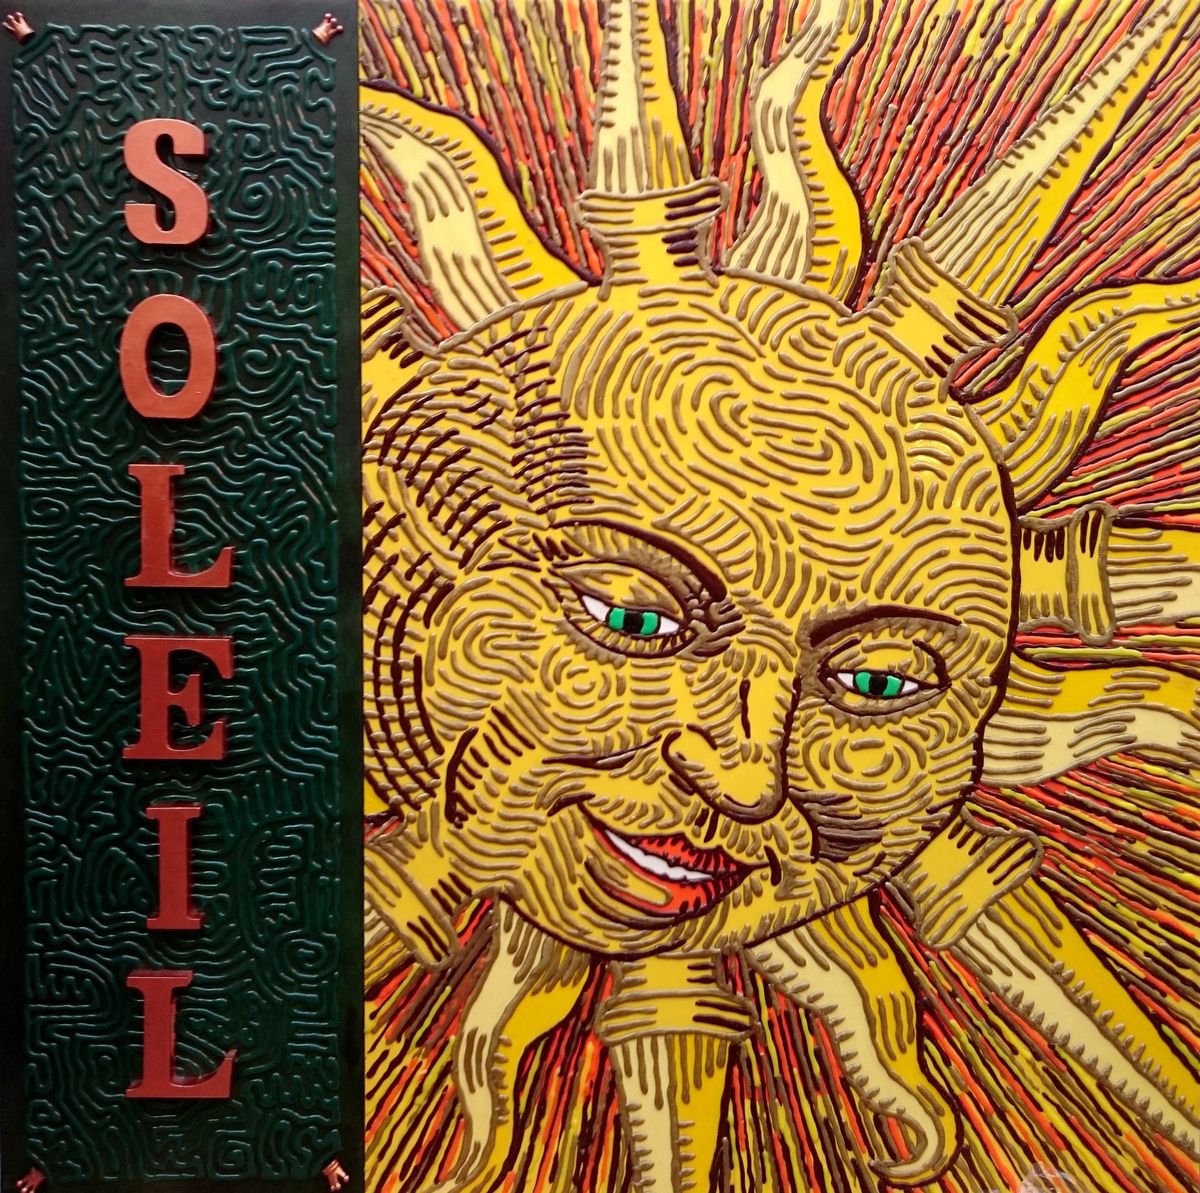 Le Soleil by Karl G.o.P.